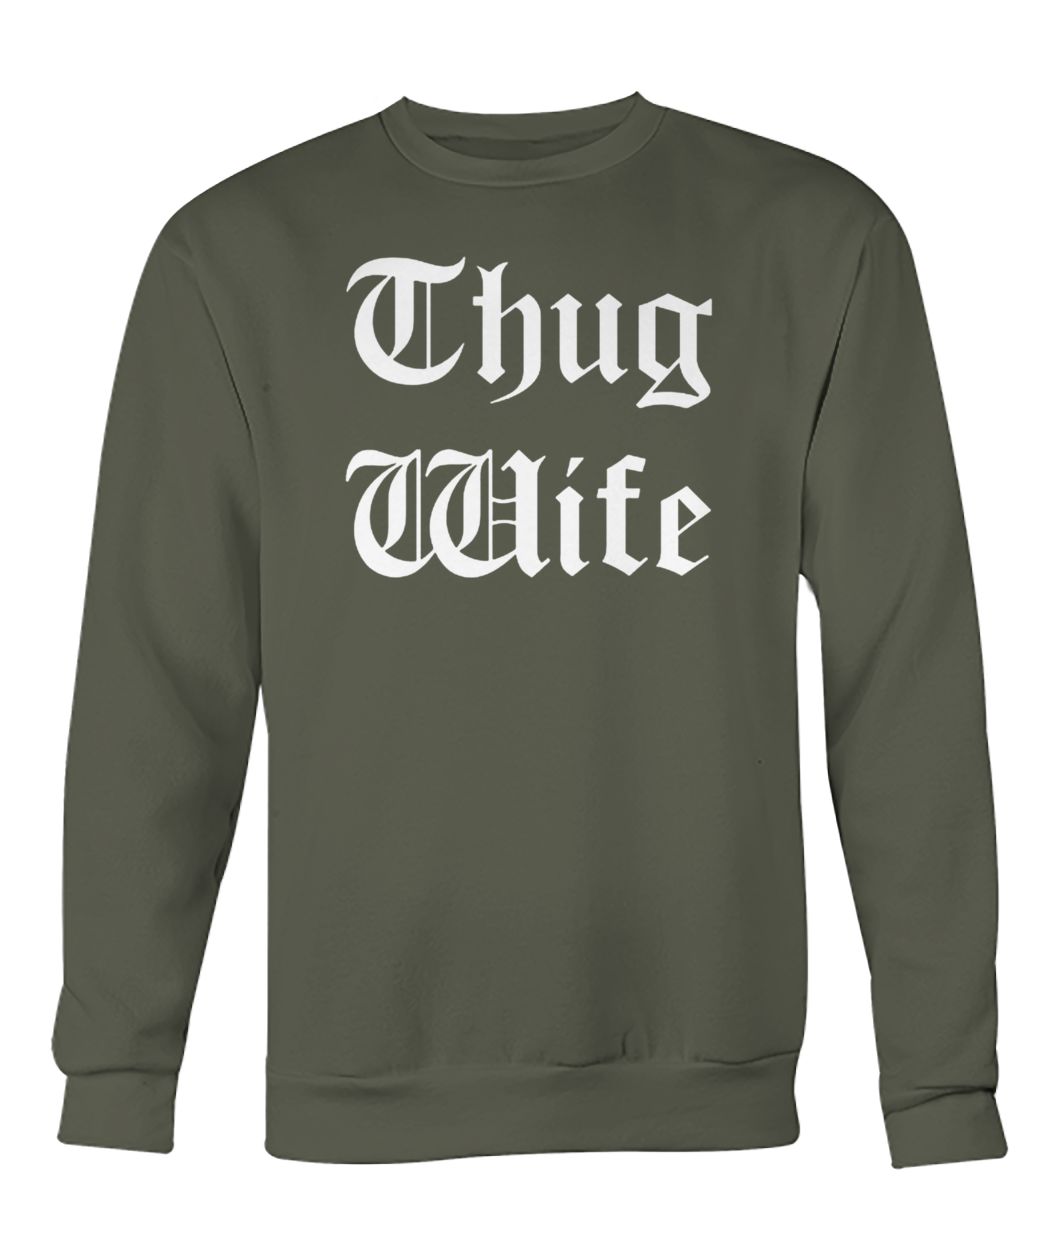 Thug wife crew neck sweatshirt